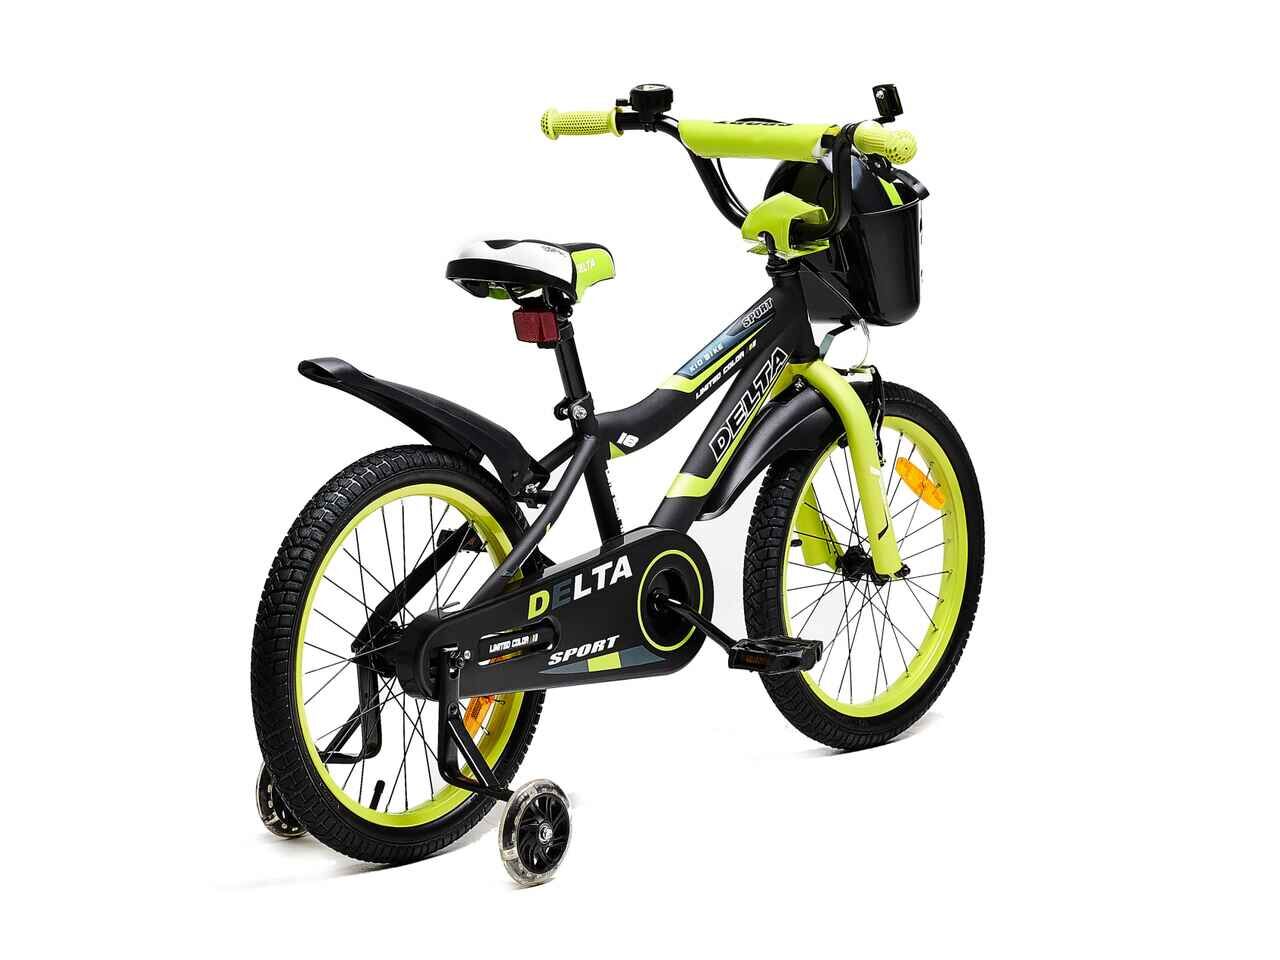 Детский велосипед DELTA Sport 18 (черный/зеленый, 2020)